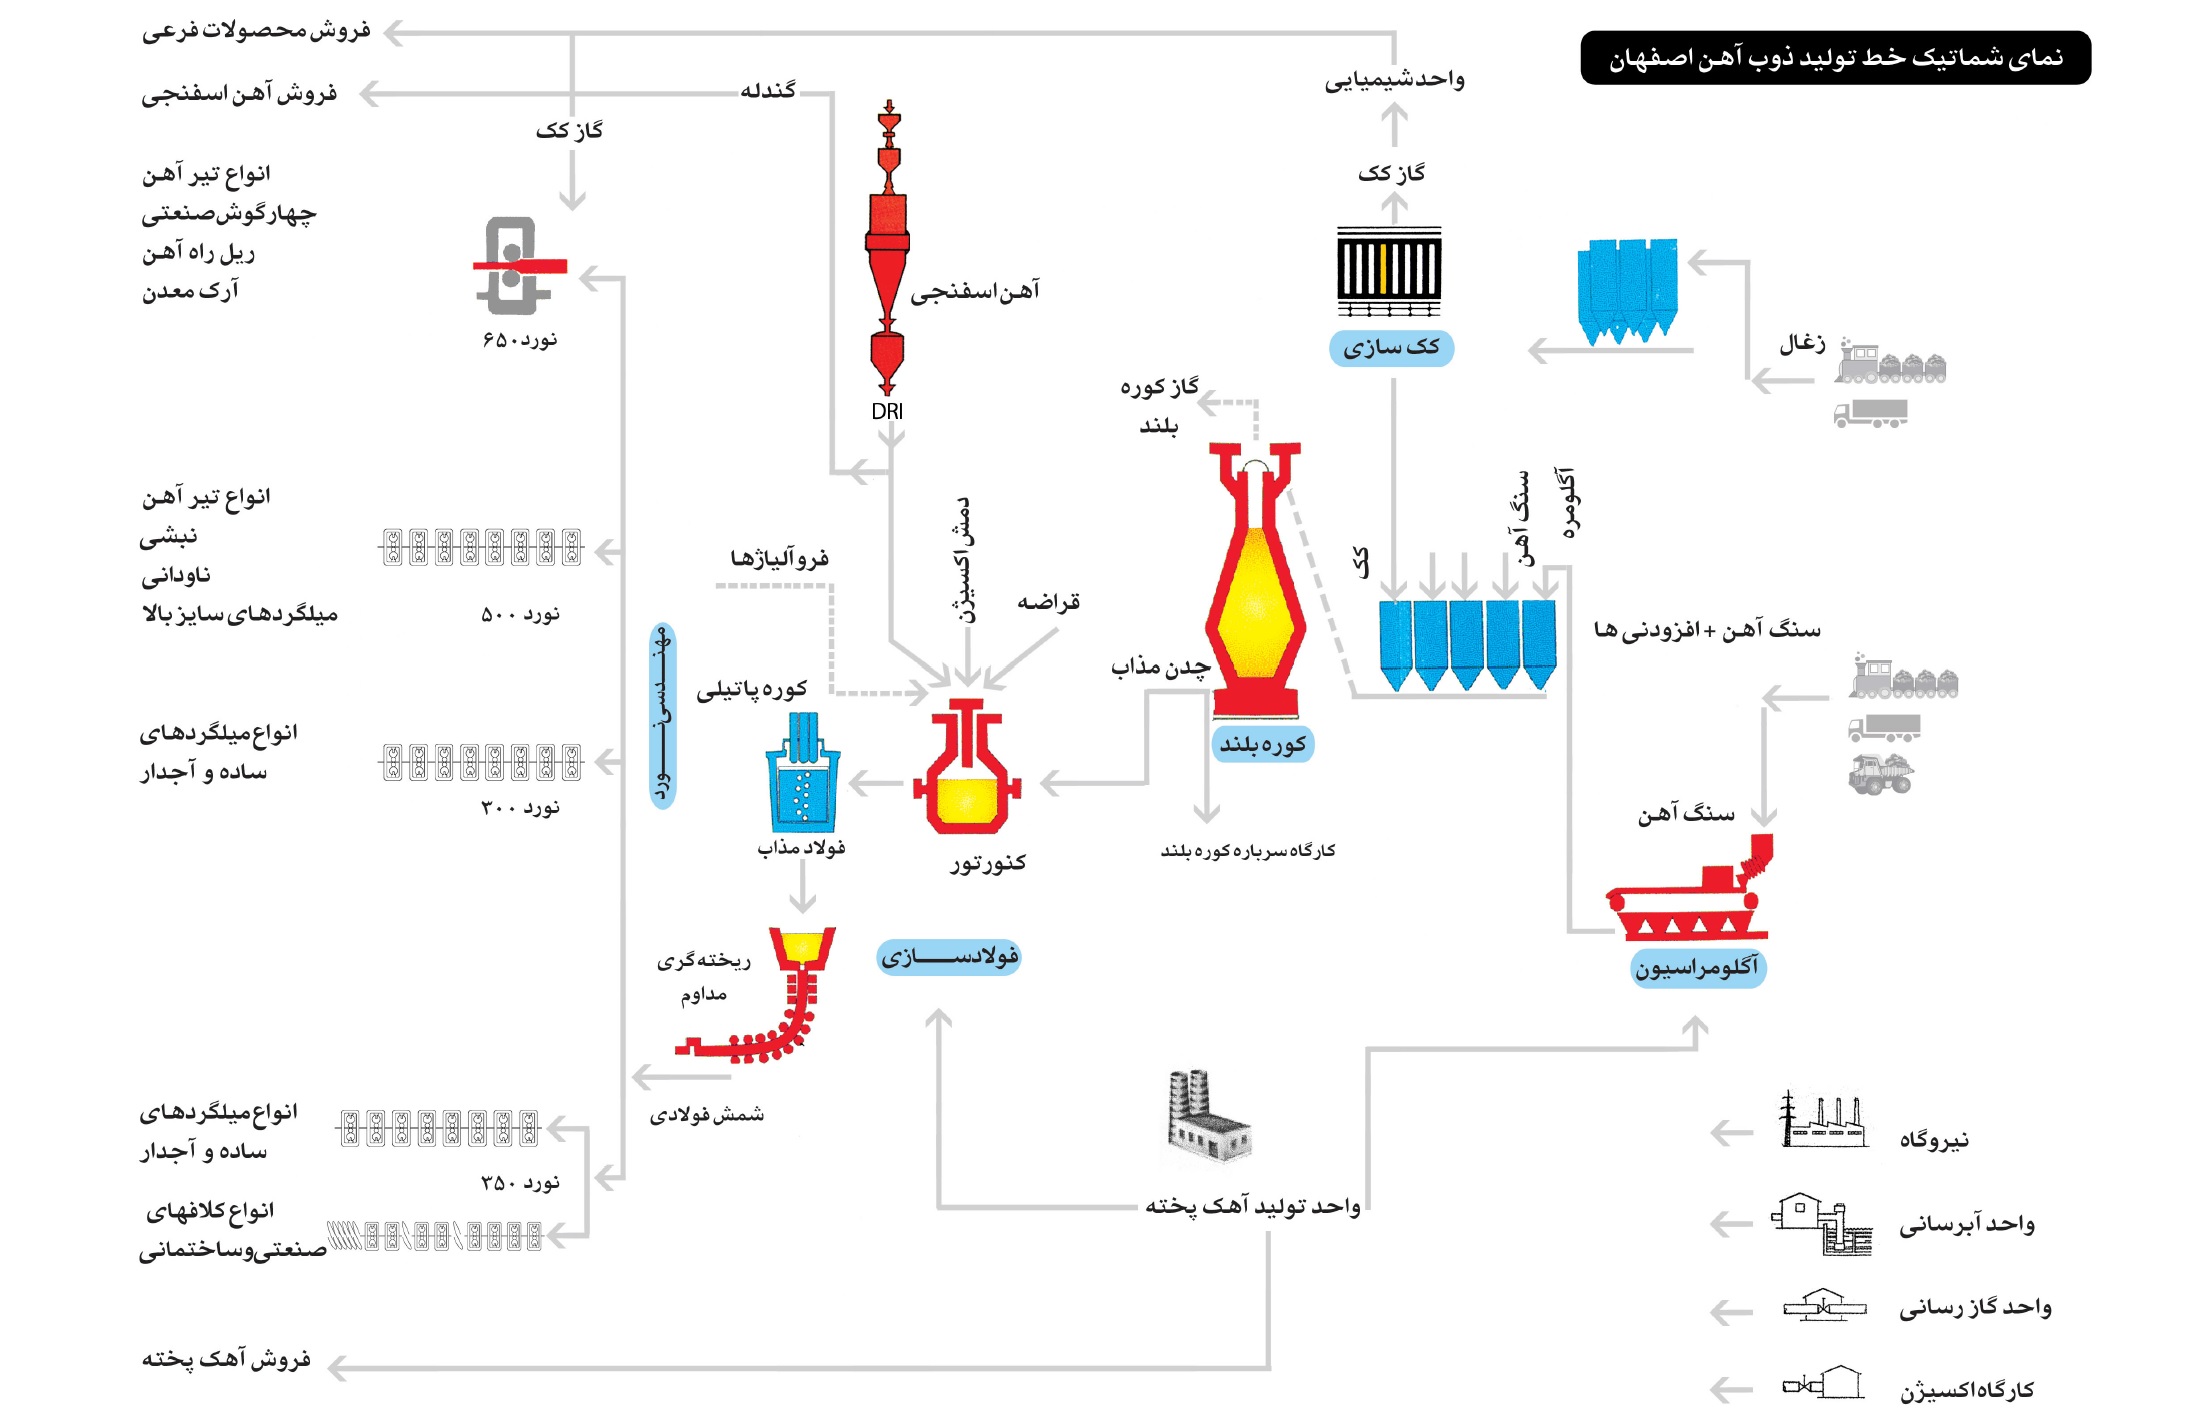 فرایند تولید در ذوب آهن اصفهان